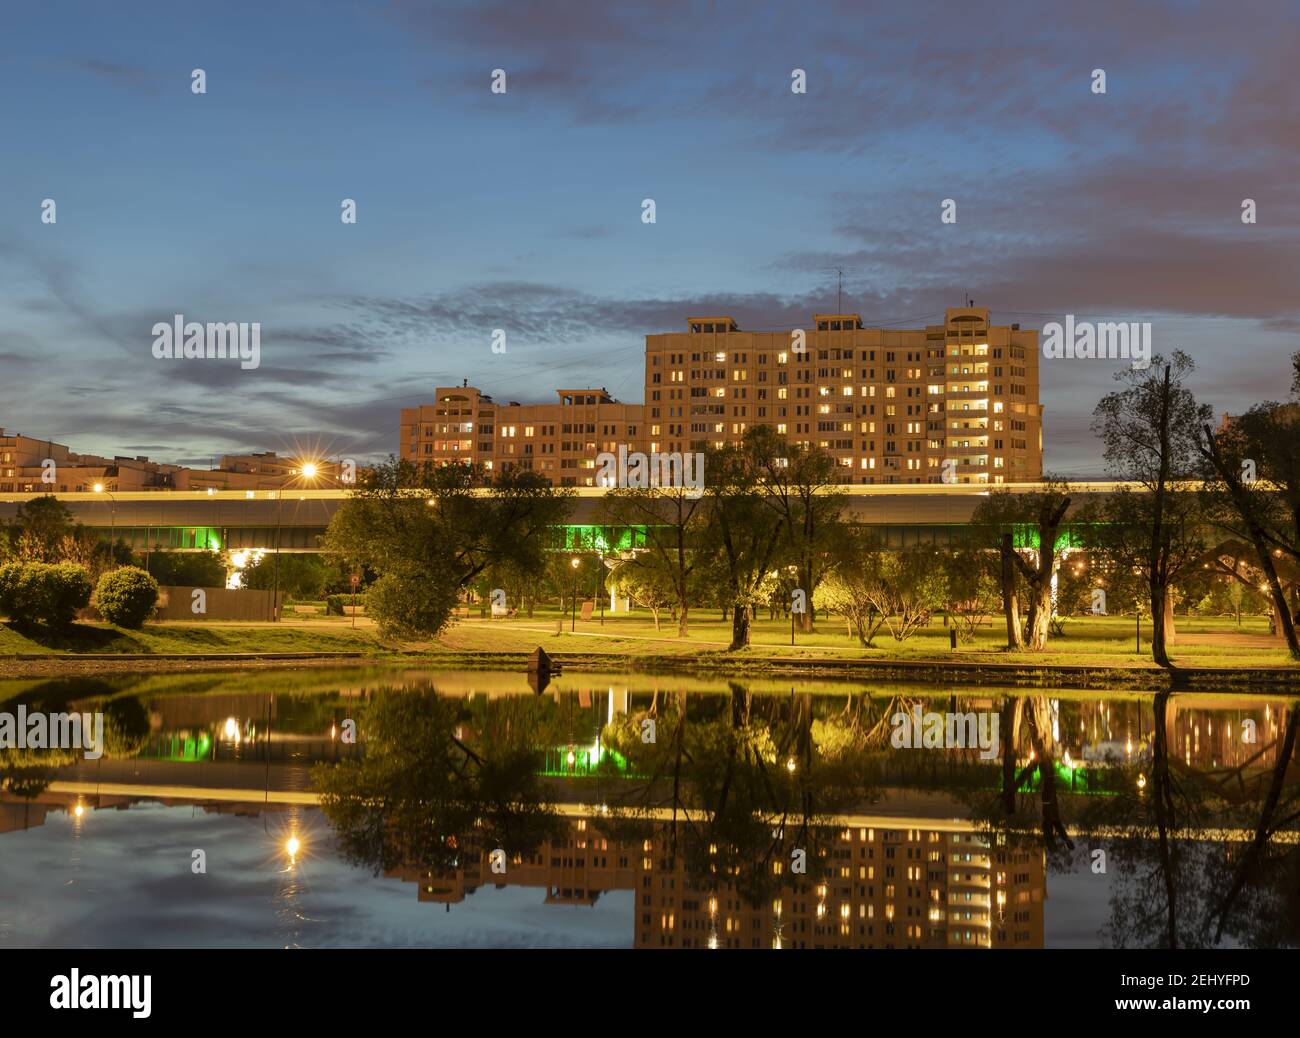 Paesaggio urbano serale. Case illuminate, sentieri nel parco della città, traccia sfocata del treno riflesso nel laghetto della città contro il cielo luminoso della sera Foto Stock